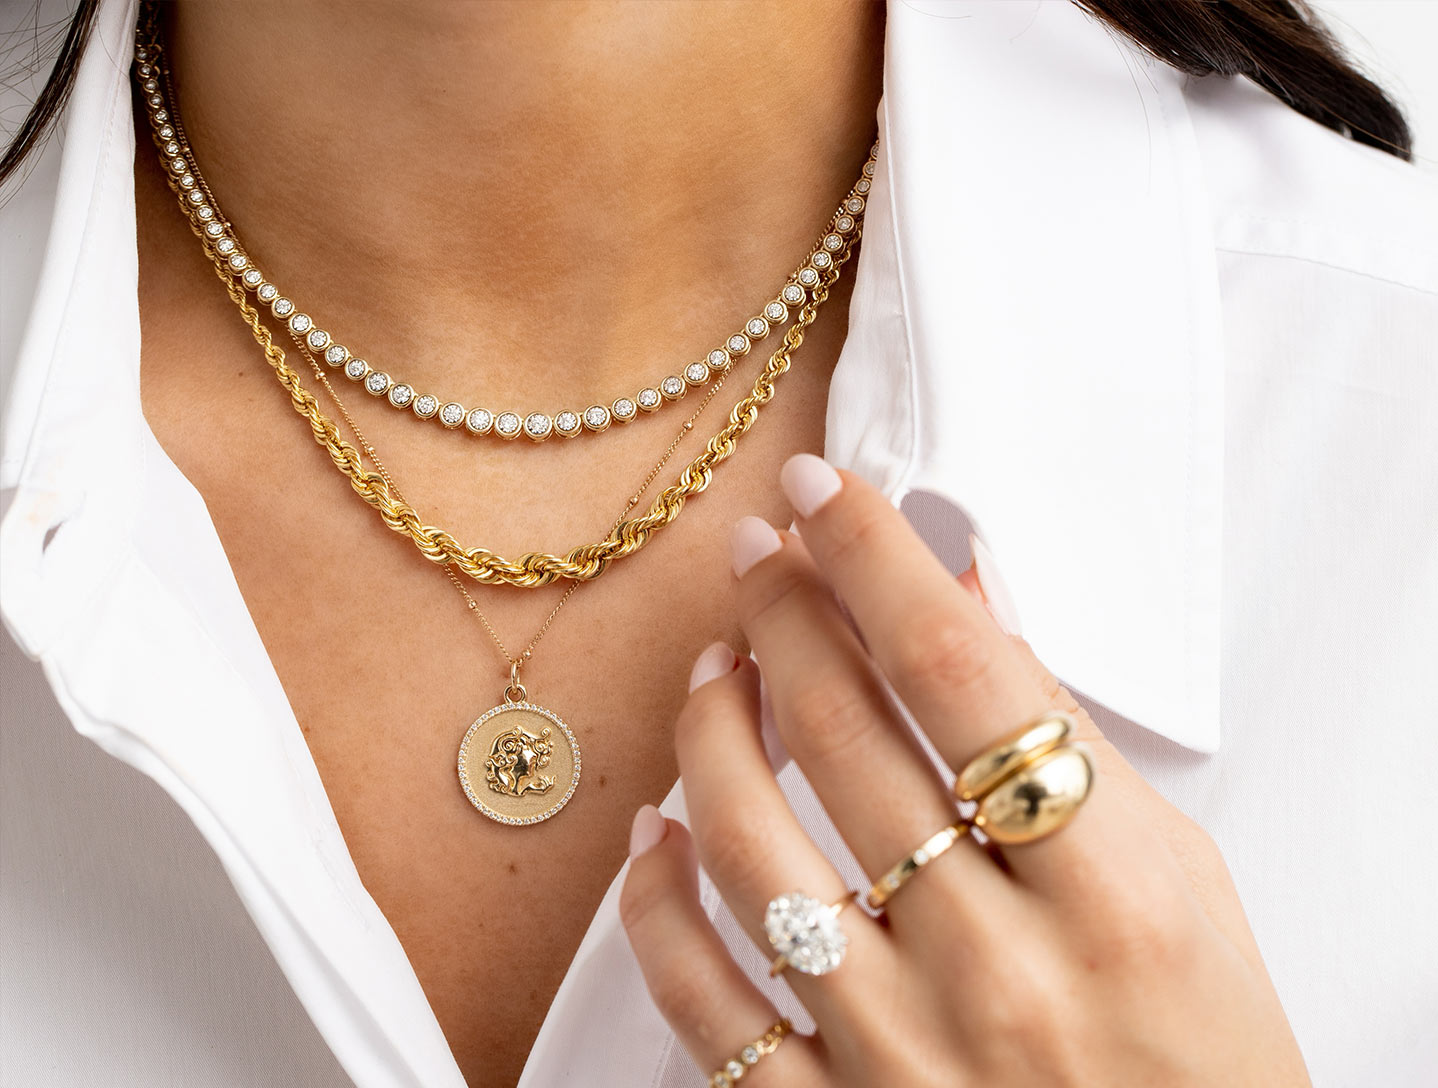 Necklaces & Pendants For Women, Shop Online